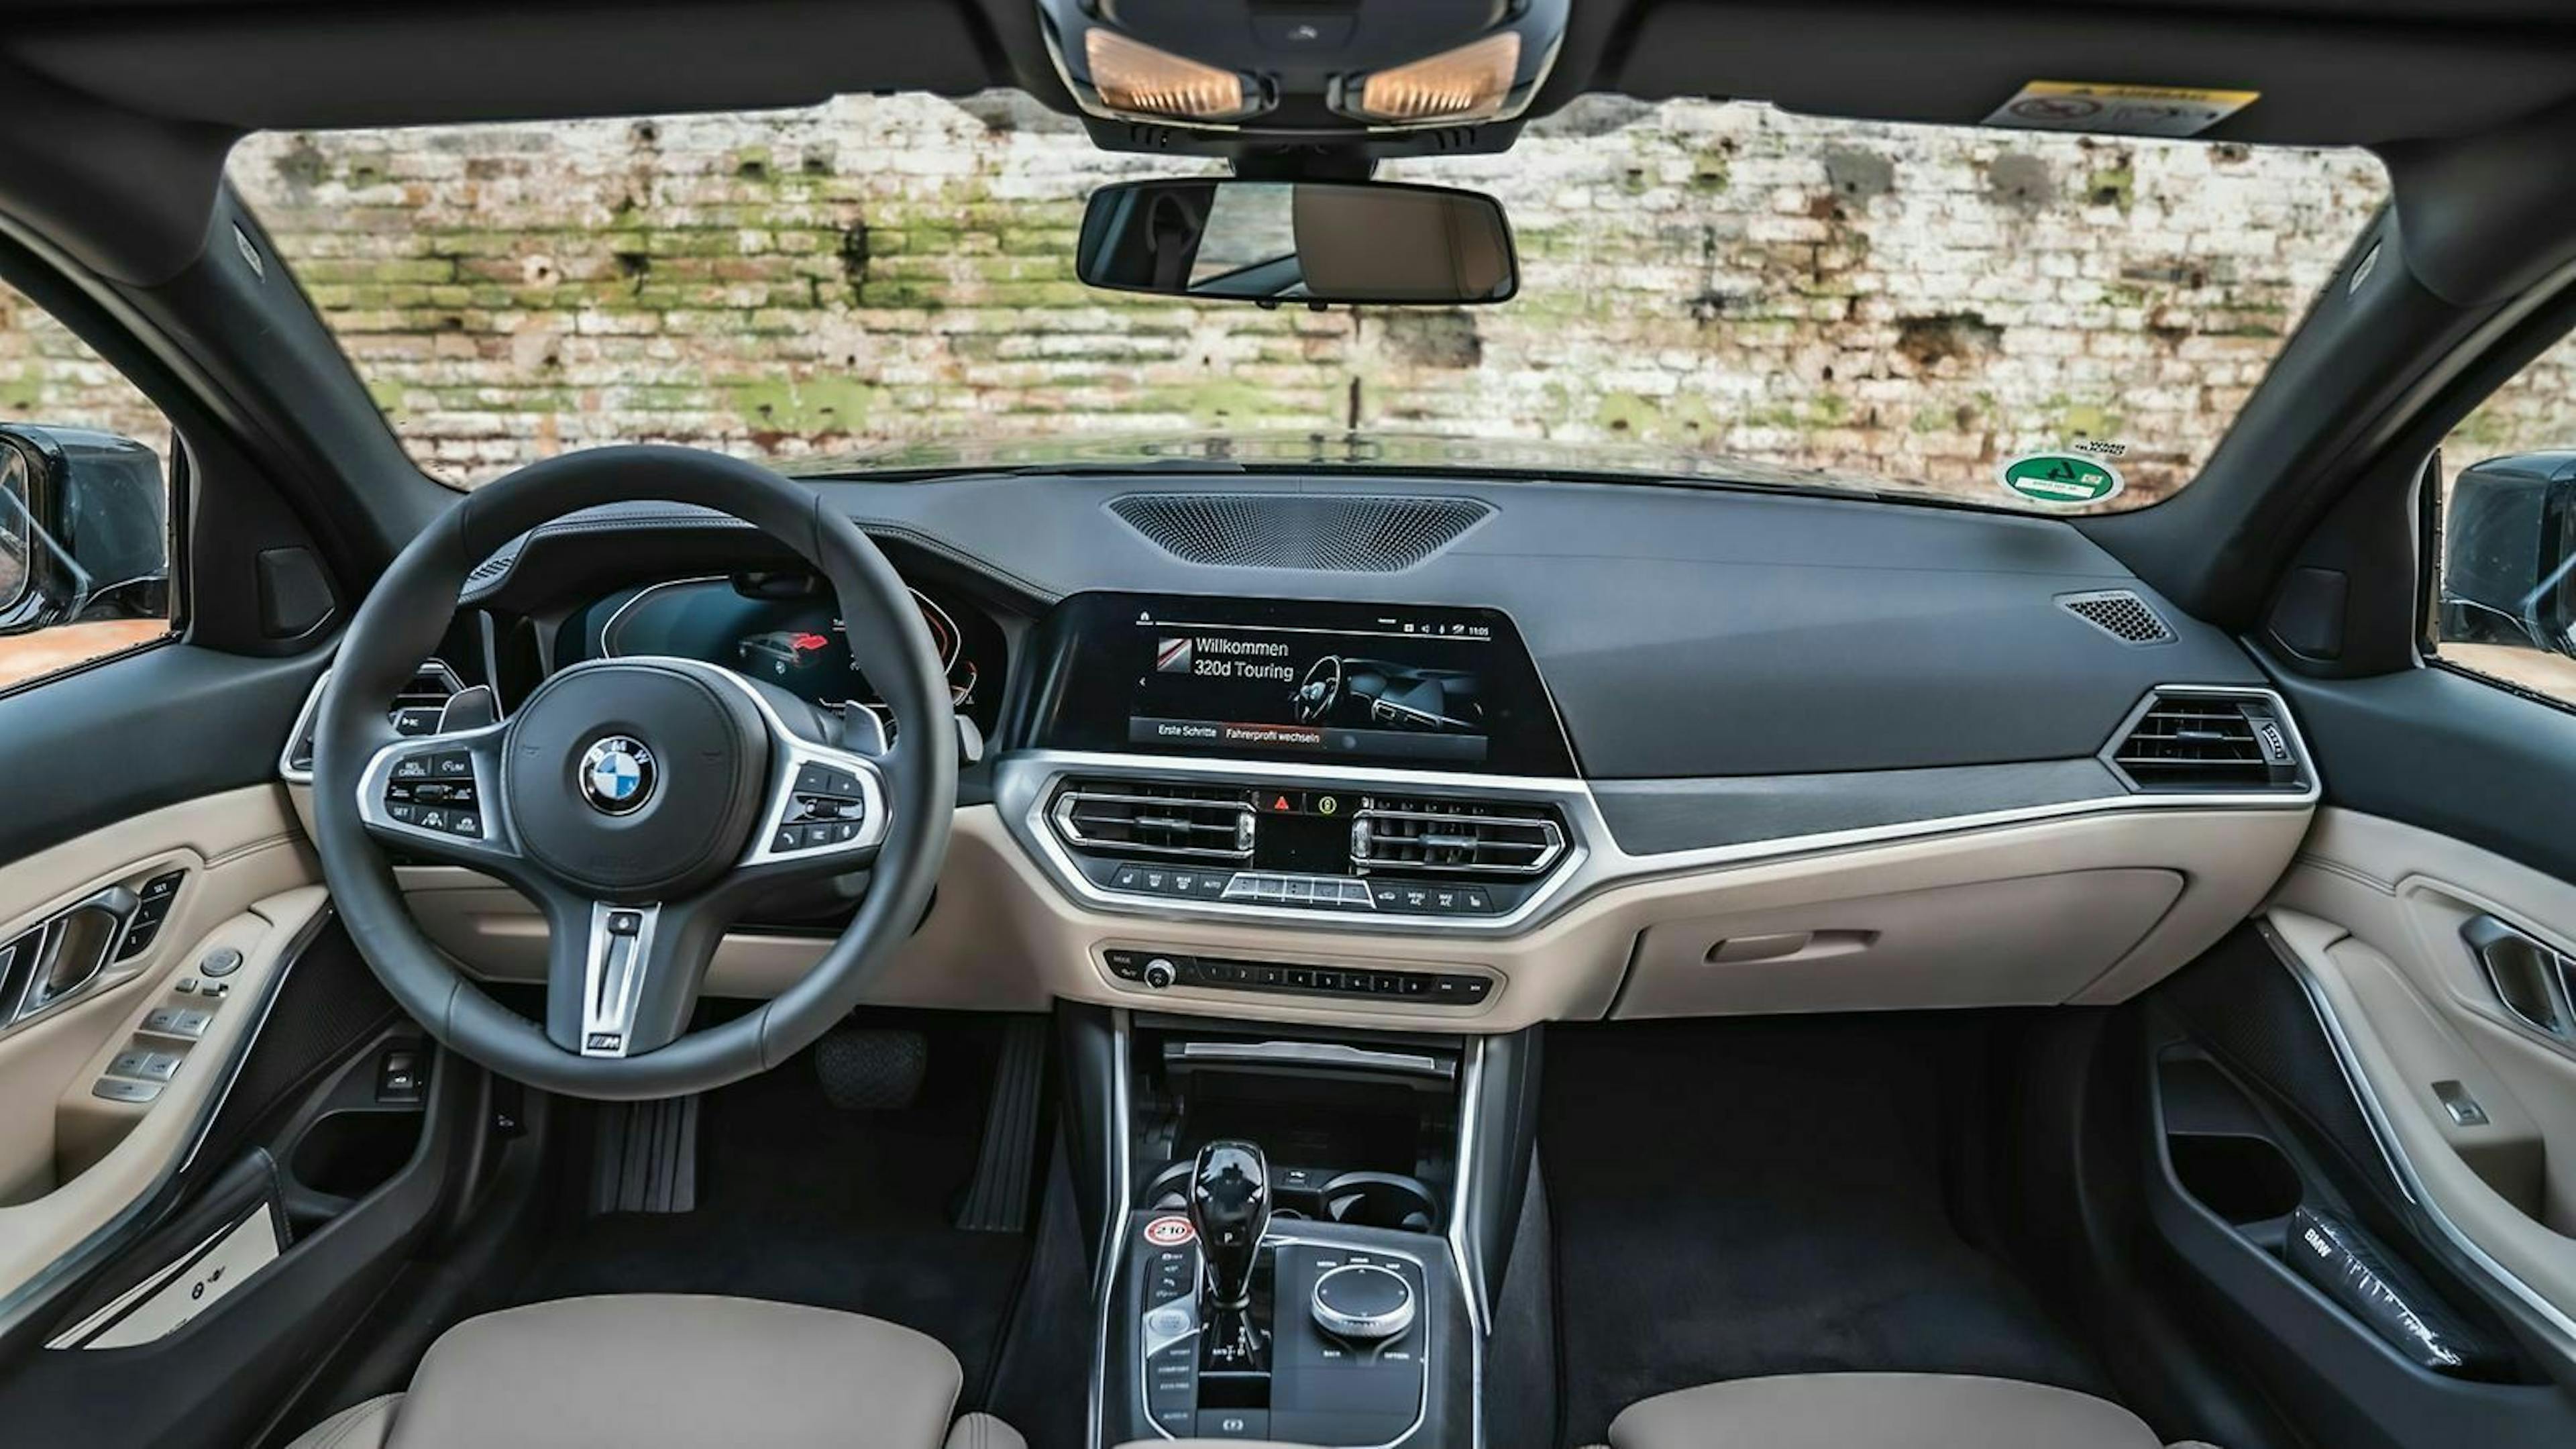 Zu sehen ist das Cockpit des BMW 320d Touring